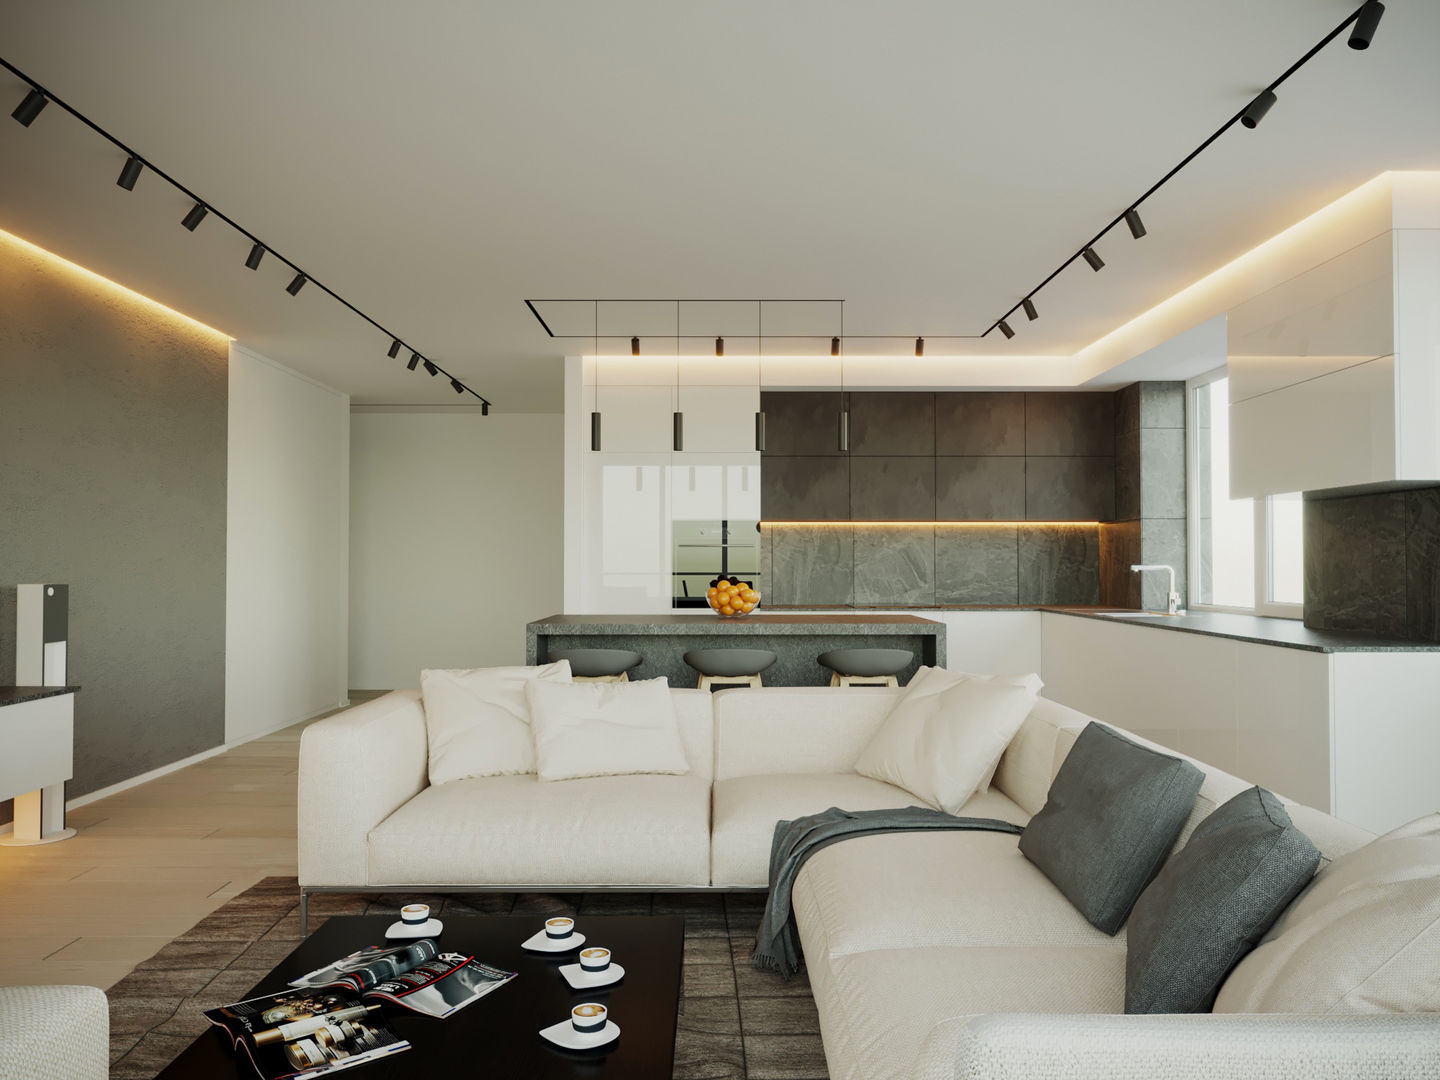 Дизайн интерьера квартиры для семьи из 4 человек, Stanislav Zhizhka Stanislav Zhizhka Minimalist living room